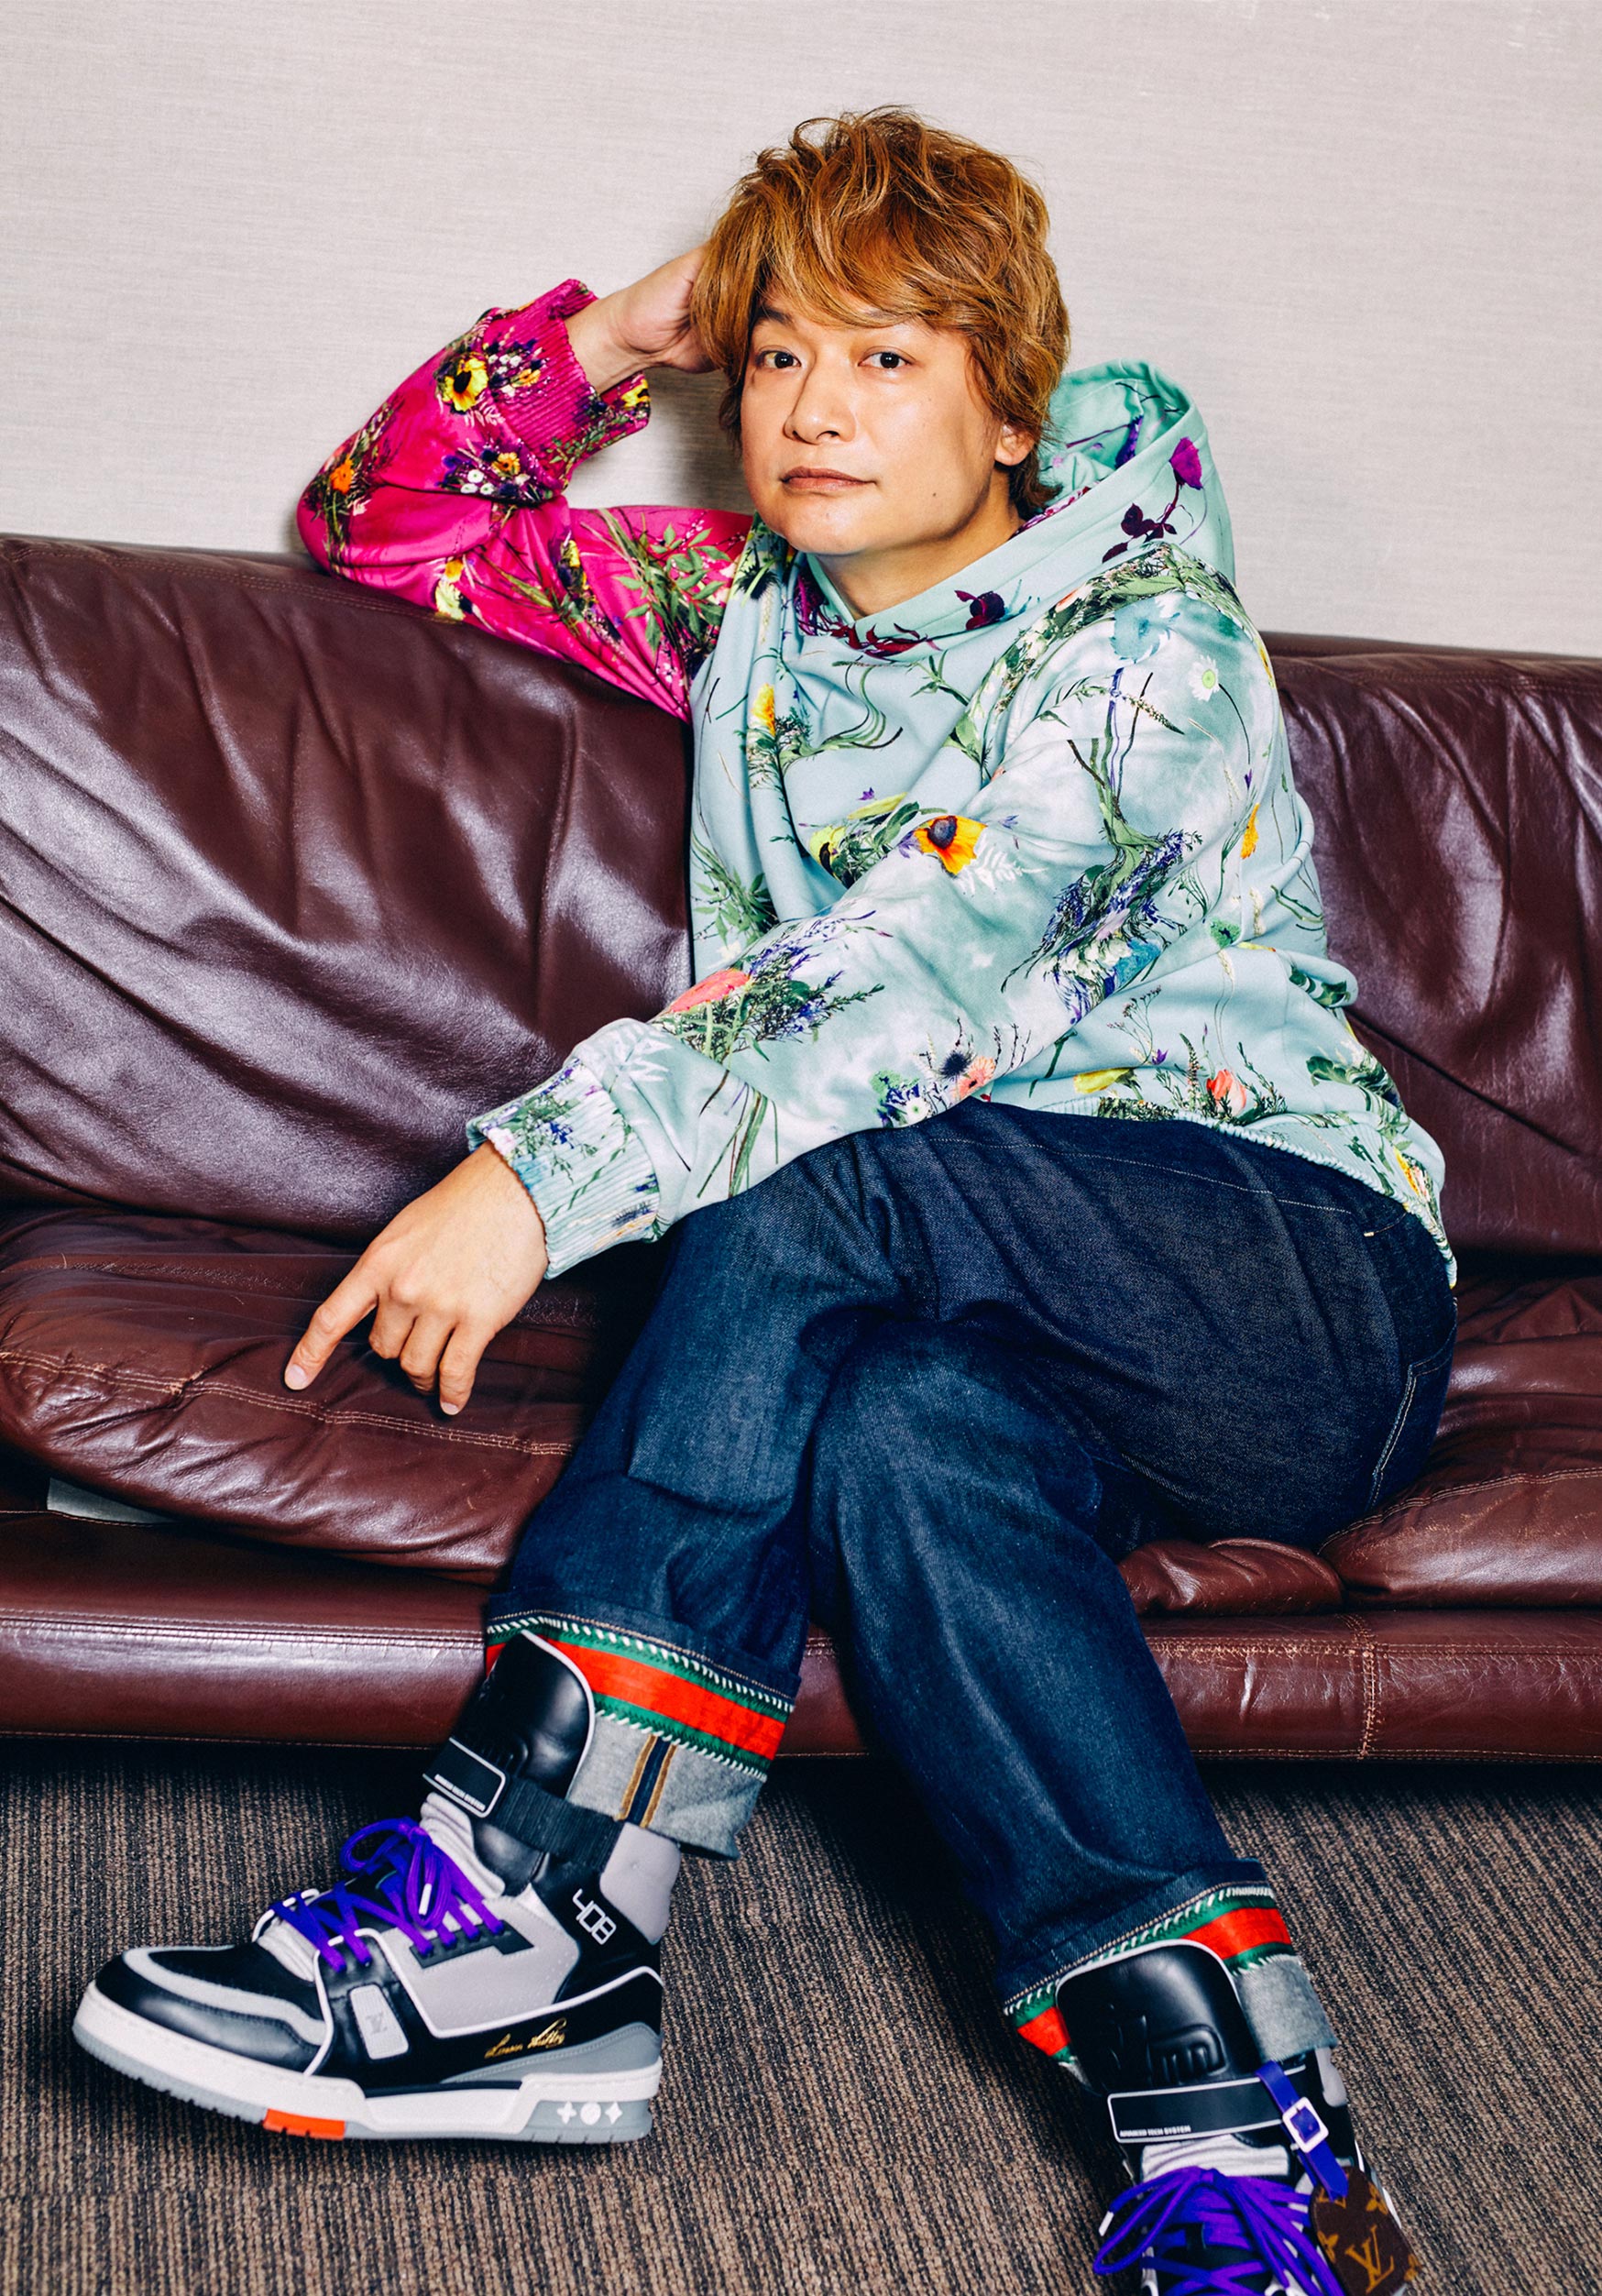 ソファーに座り、鮮やかなパーカーを着た香取慎吾さんの写真